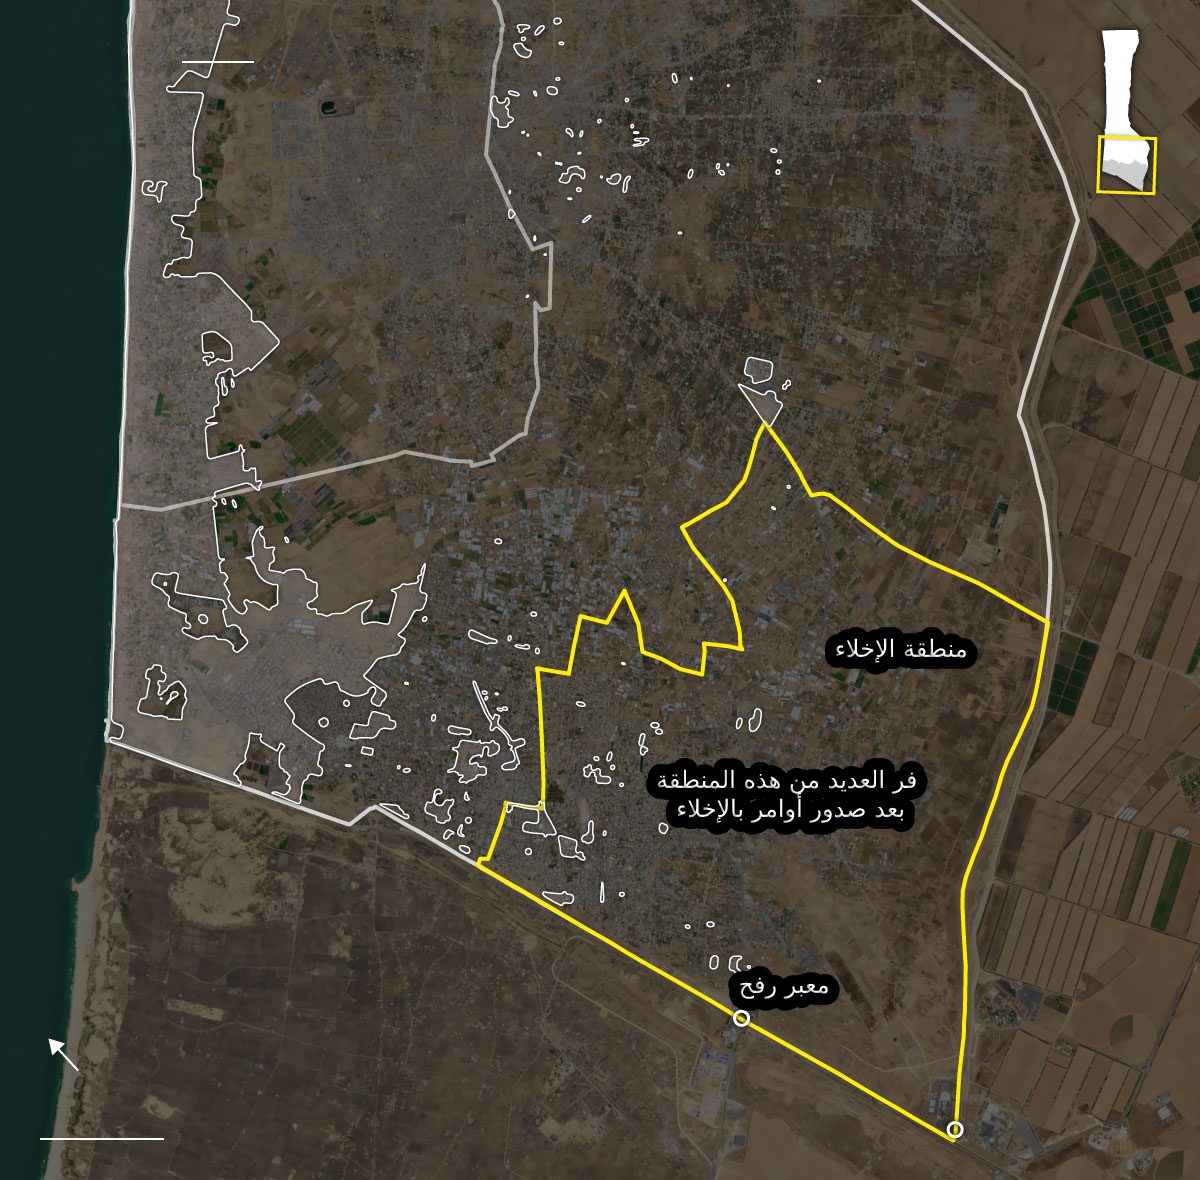 صورة بالأقمار الصناعية لشركة Planet Labs تُظهر مناطق الاخلاء في رفح بعد التوغل الإسرائيلي واحتلال المعبر الحدودي/نيويورك تايمز